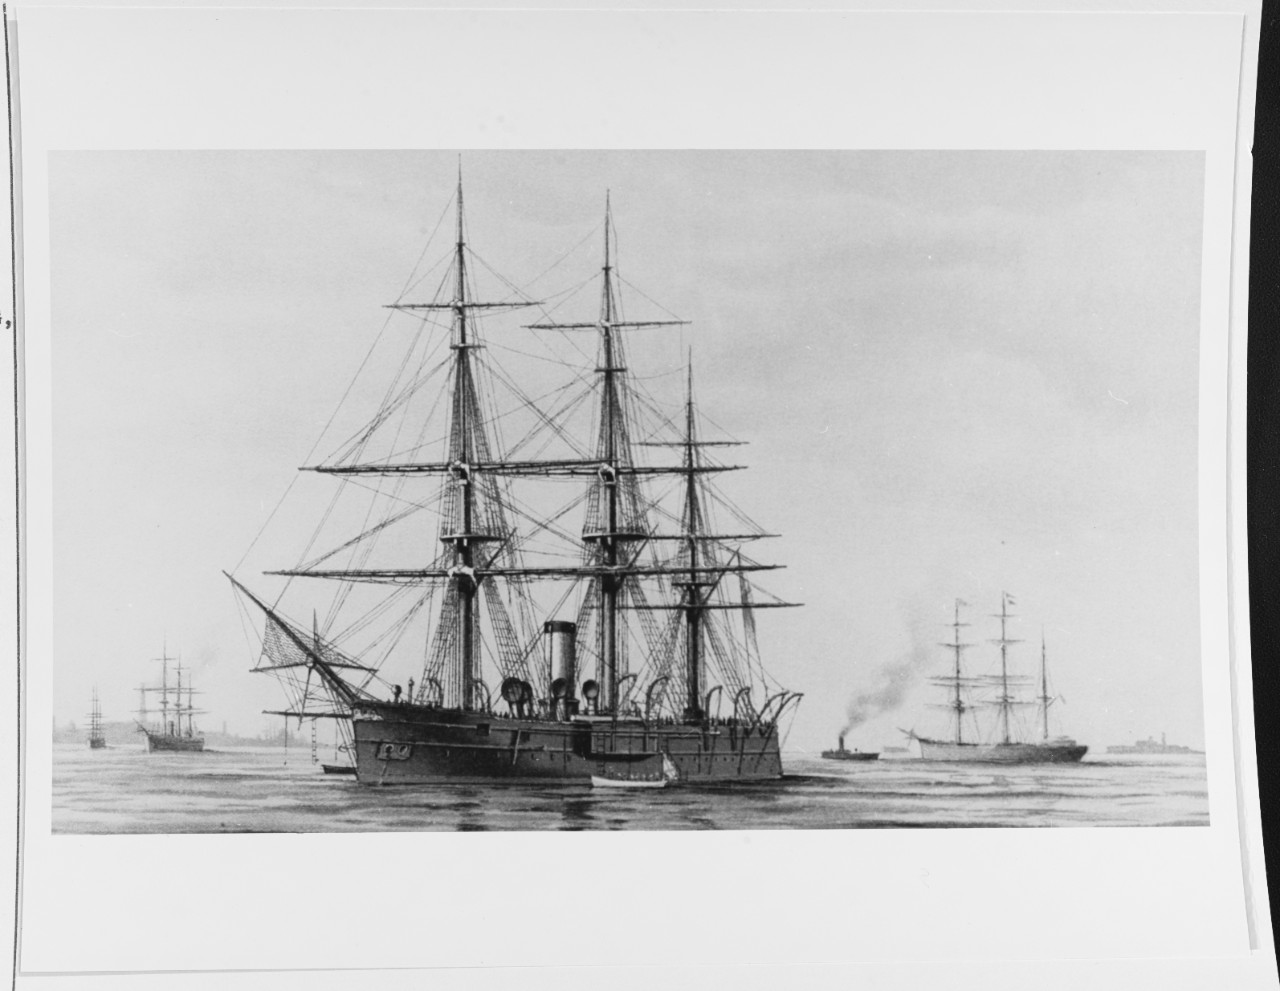 FERZOG EDINBURGSKI (Russian cruiser, 1875)